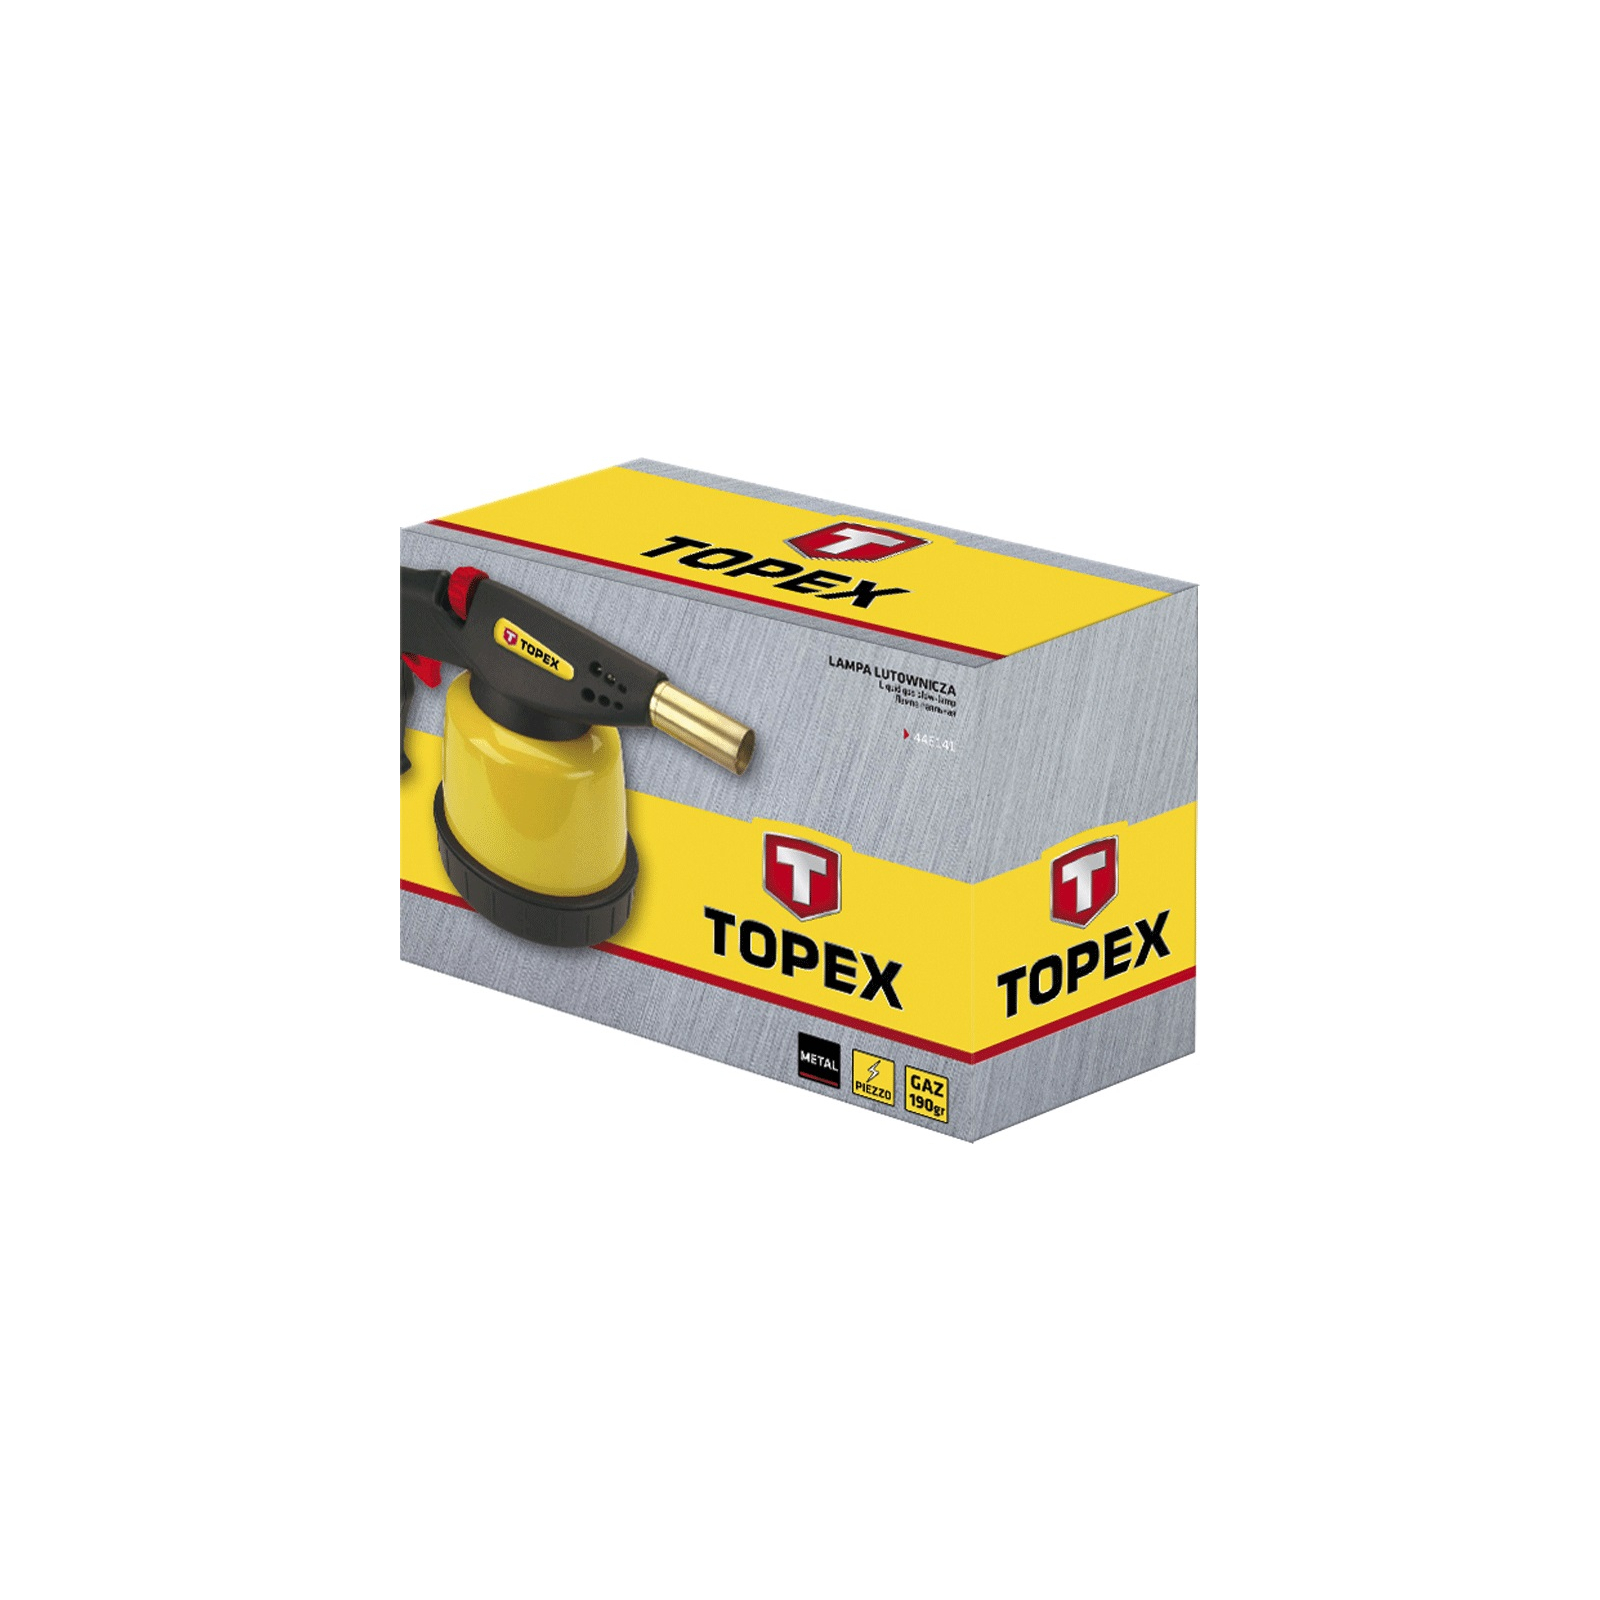 Газовый паяльник Topex джпьезоноджог, 20 мл, картридж 190 г (44E141) изображение 2